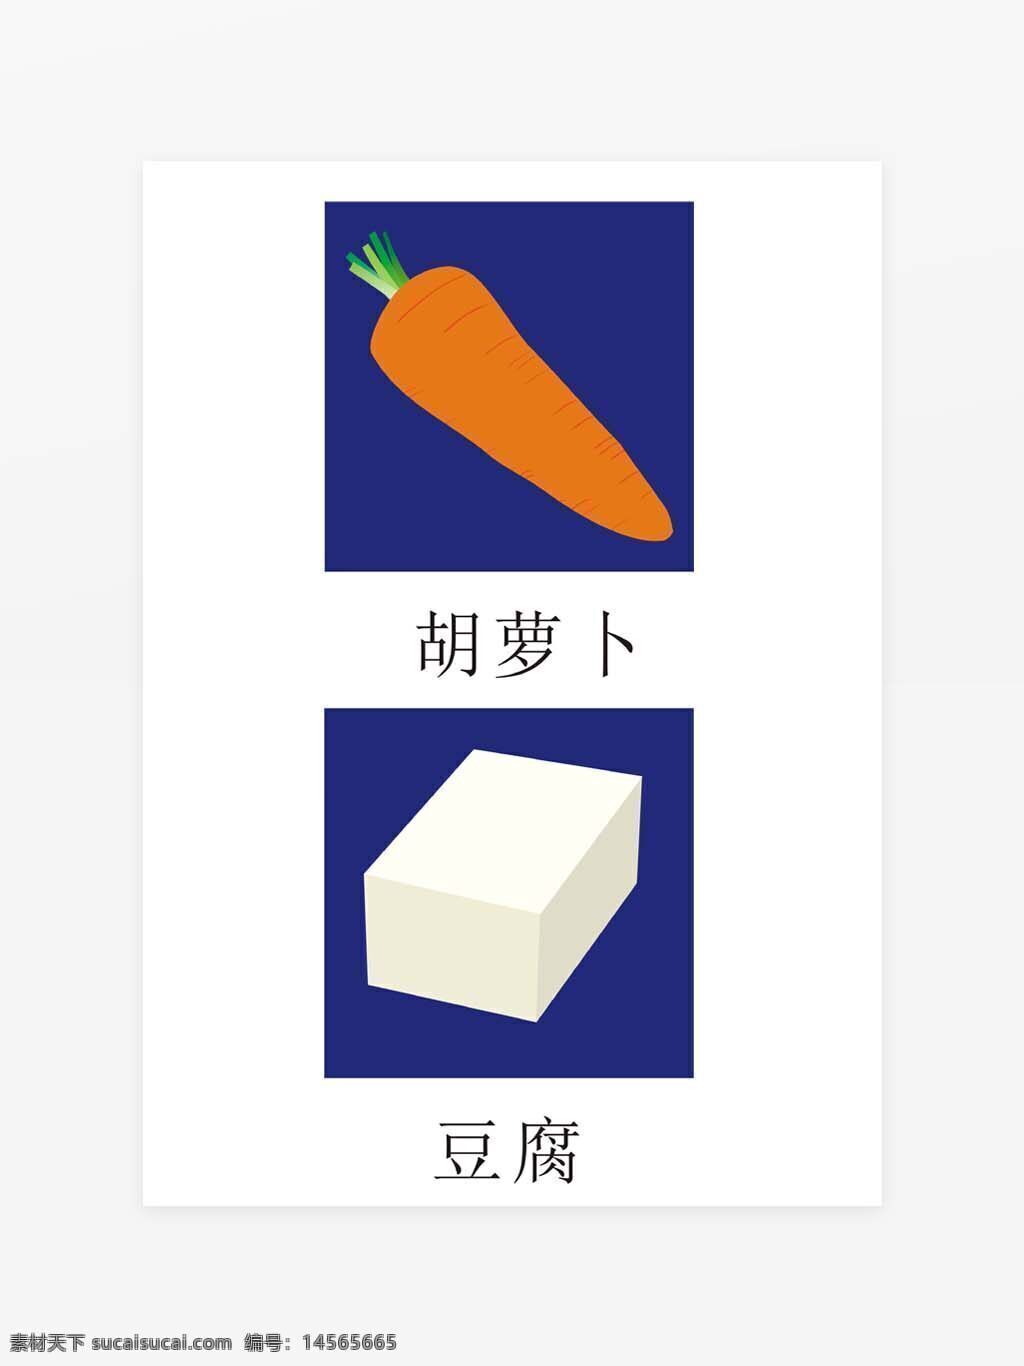 蔬菜矢量图 胡萝卜矢量图 豆腐矢量图 蔬菜图标 可变大小 超市、自由市场、菜市场食品图标